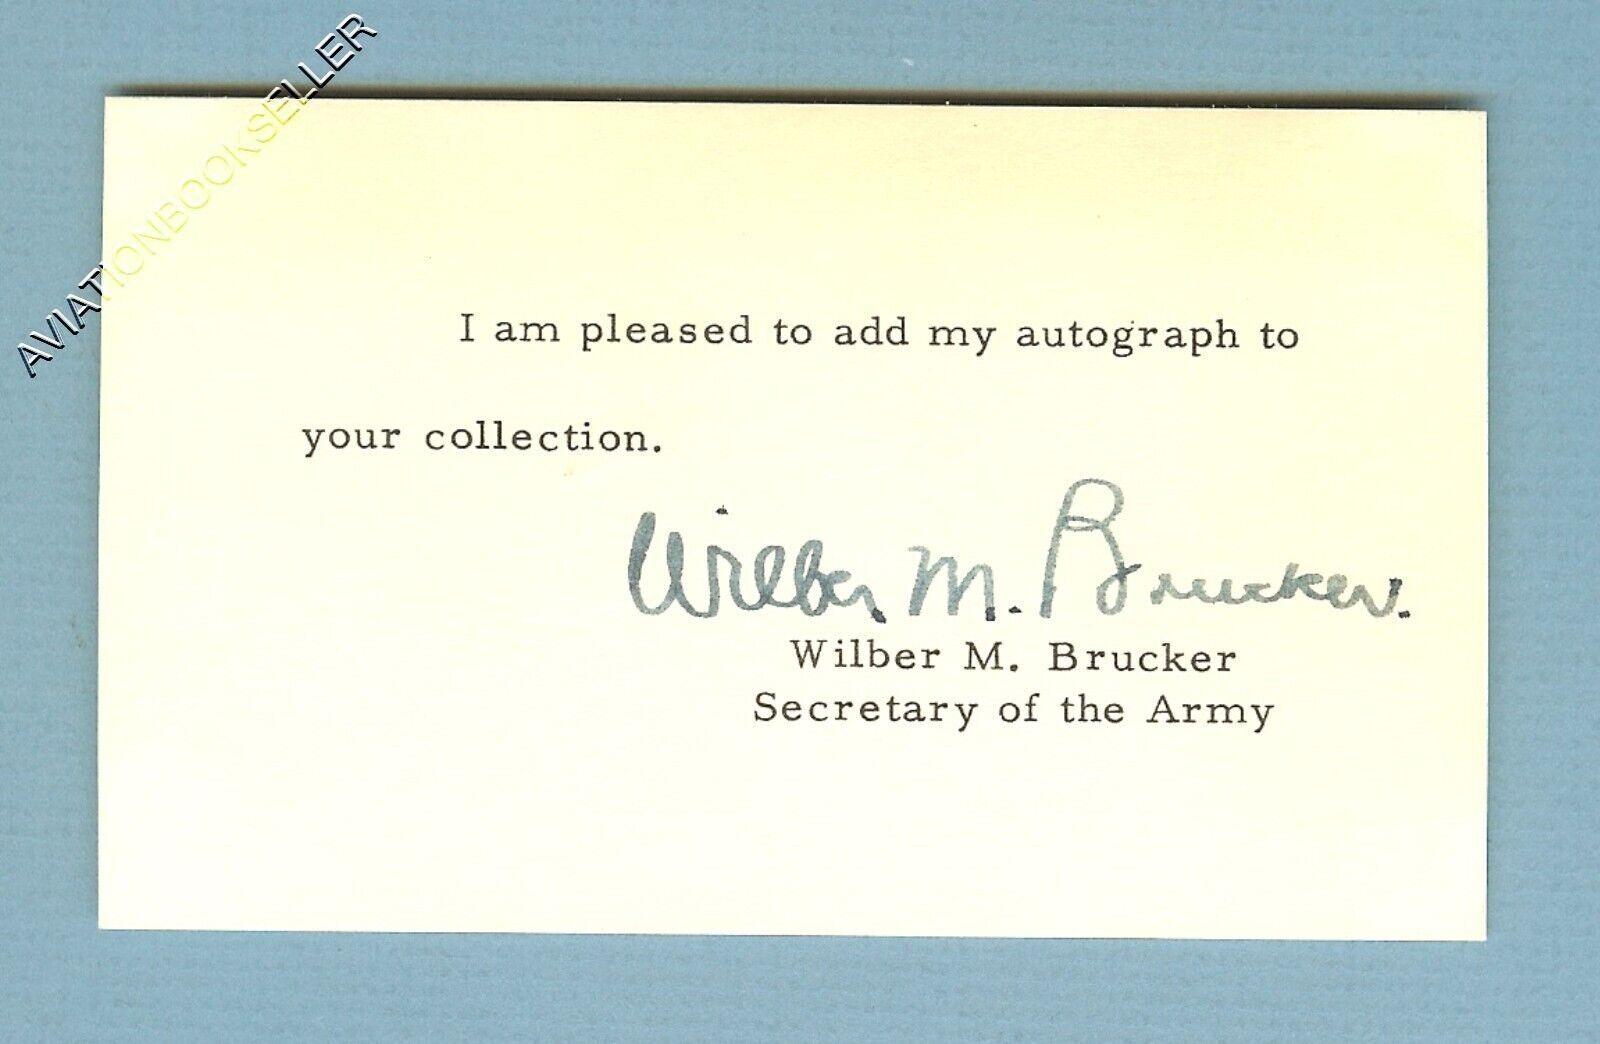 PRESIDENT EISENHOWER\'S SECRETARY OF THE ARMY 1955-61 WILBER M. BRUCKER 